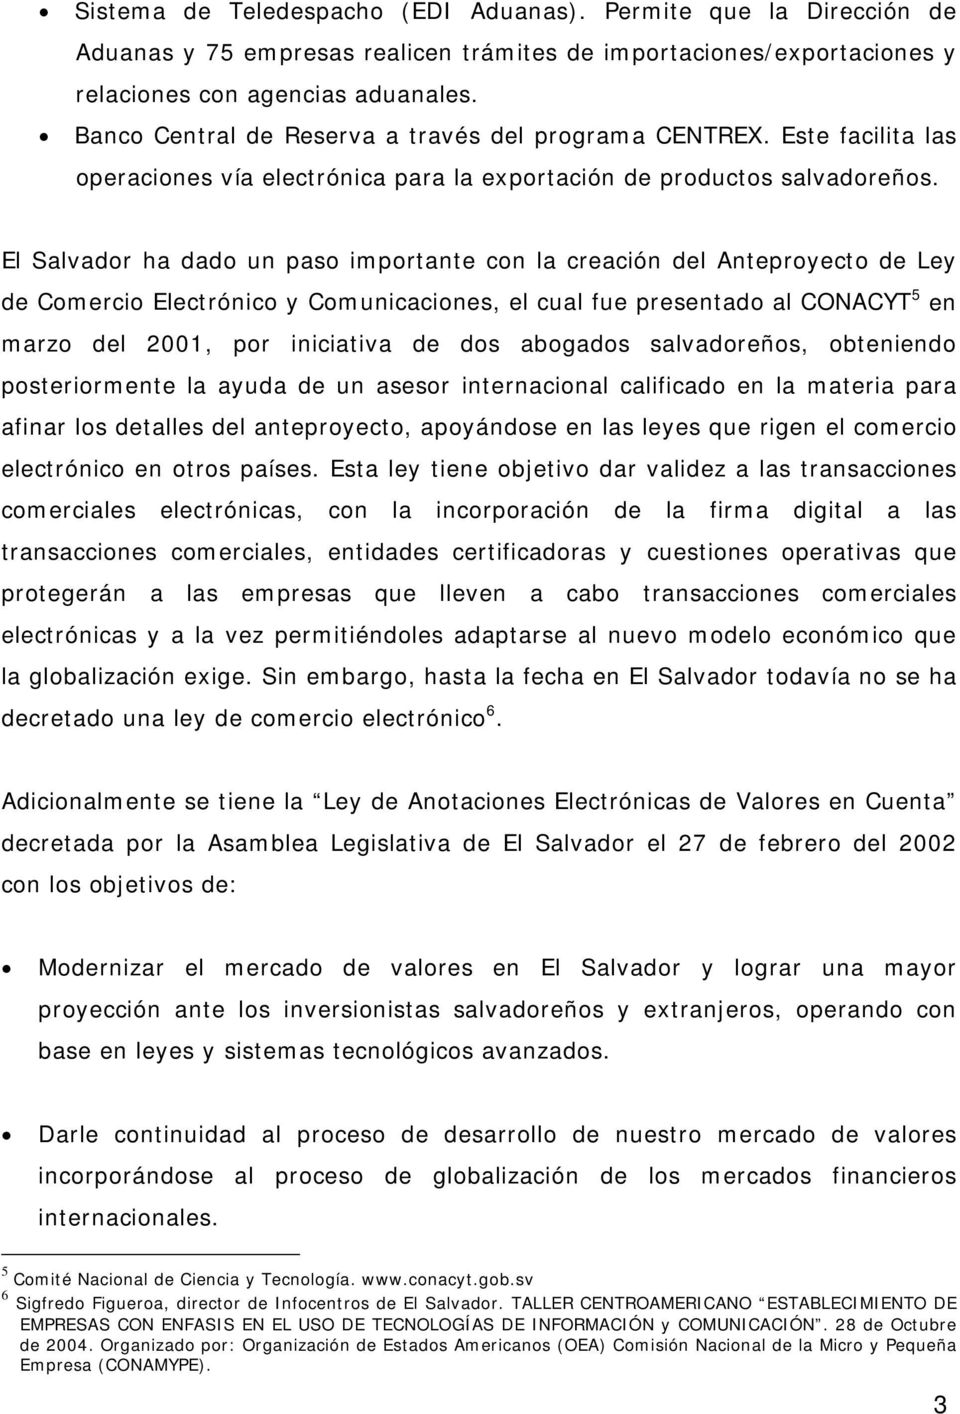 El Salvador ha dado un paso importante con la creación del Anteproyecto de Ley de Comercio Electrónico y Comunicaciones, el cual fue presentado al CONACYT 5 en marzo del 2001, por iniciativa de dos